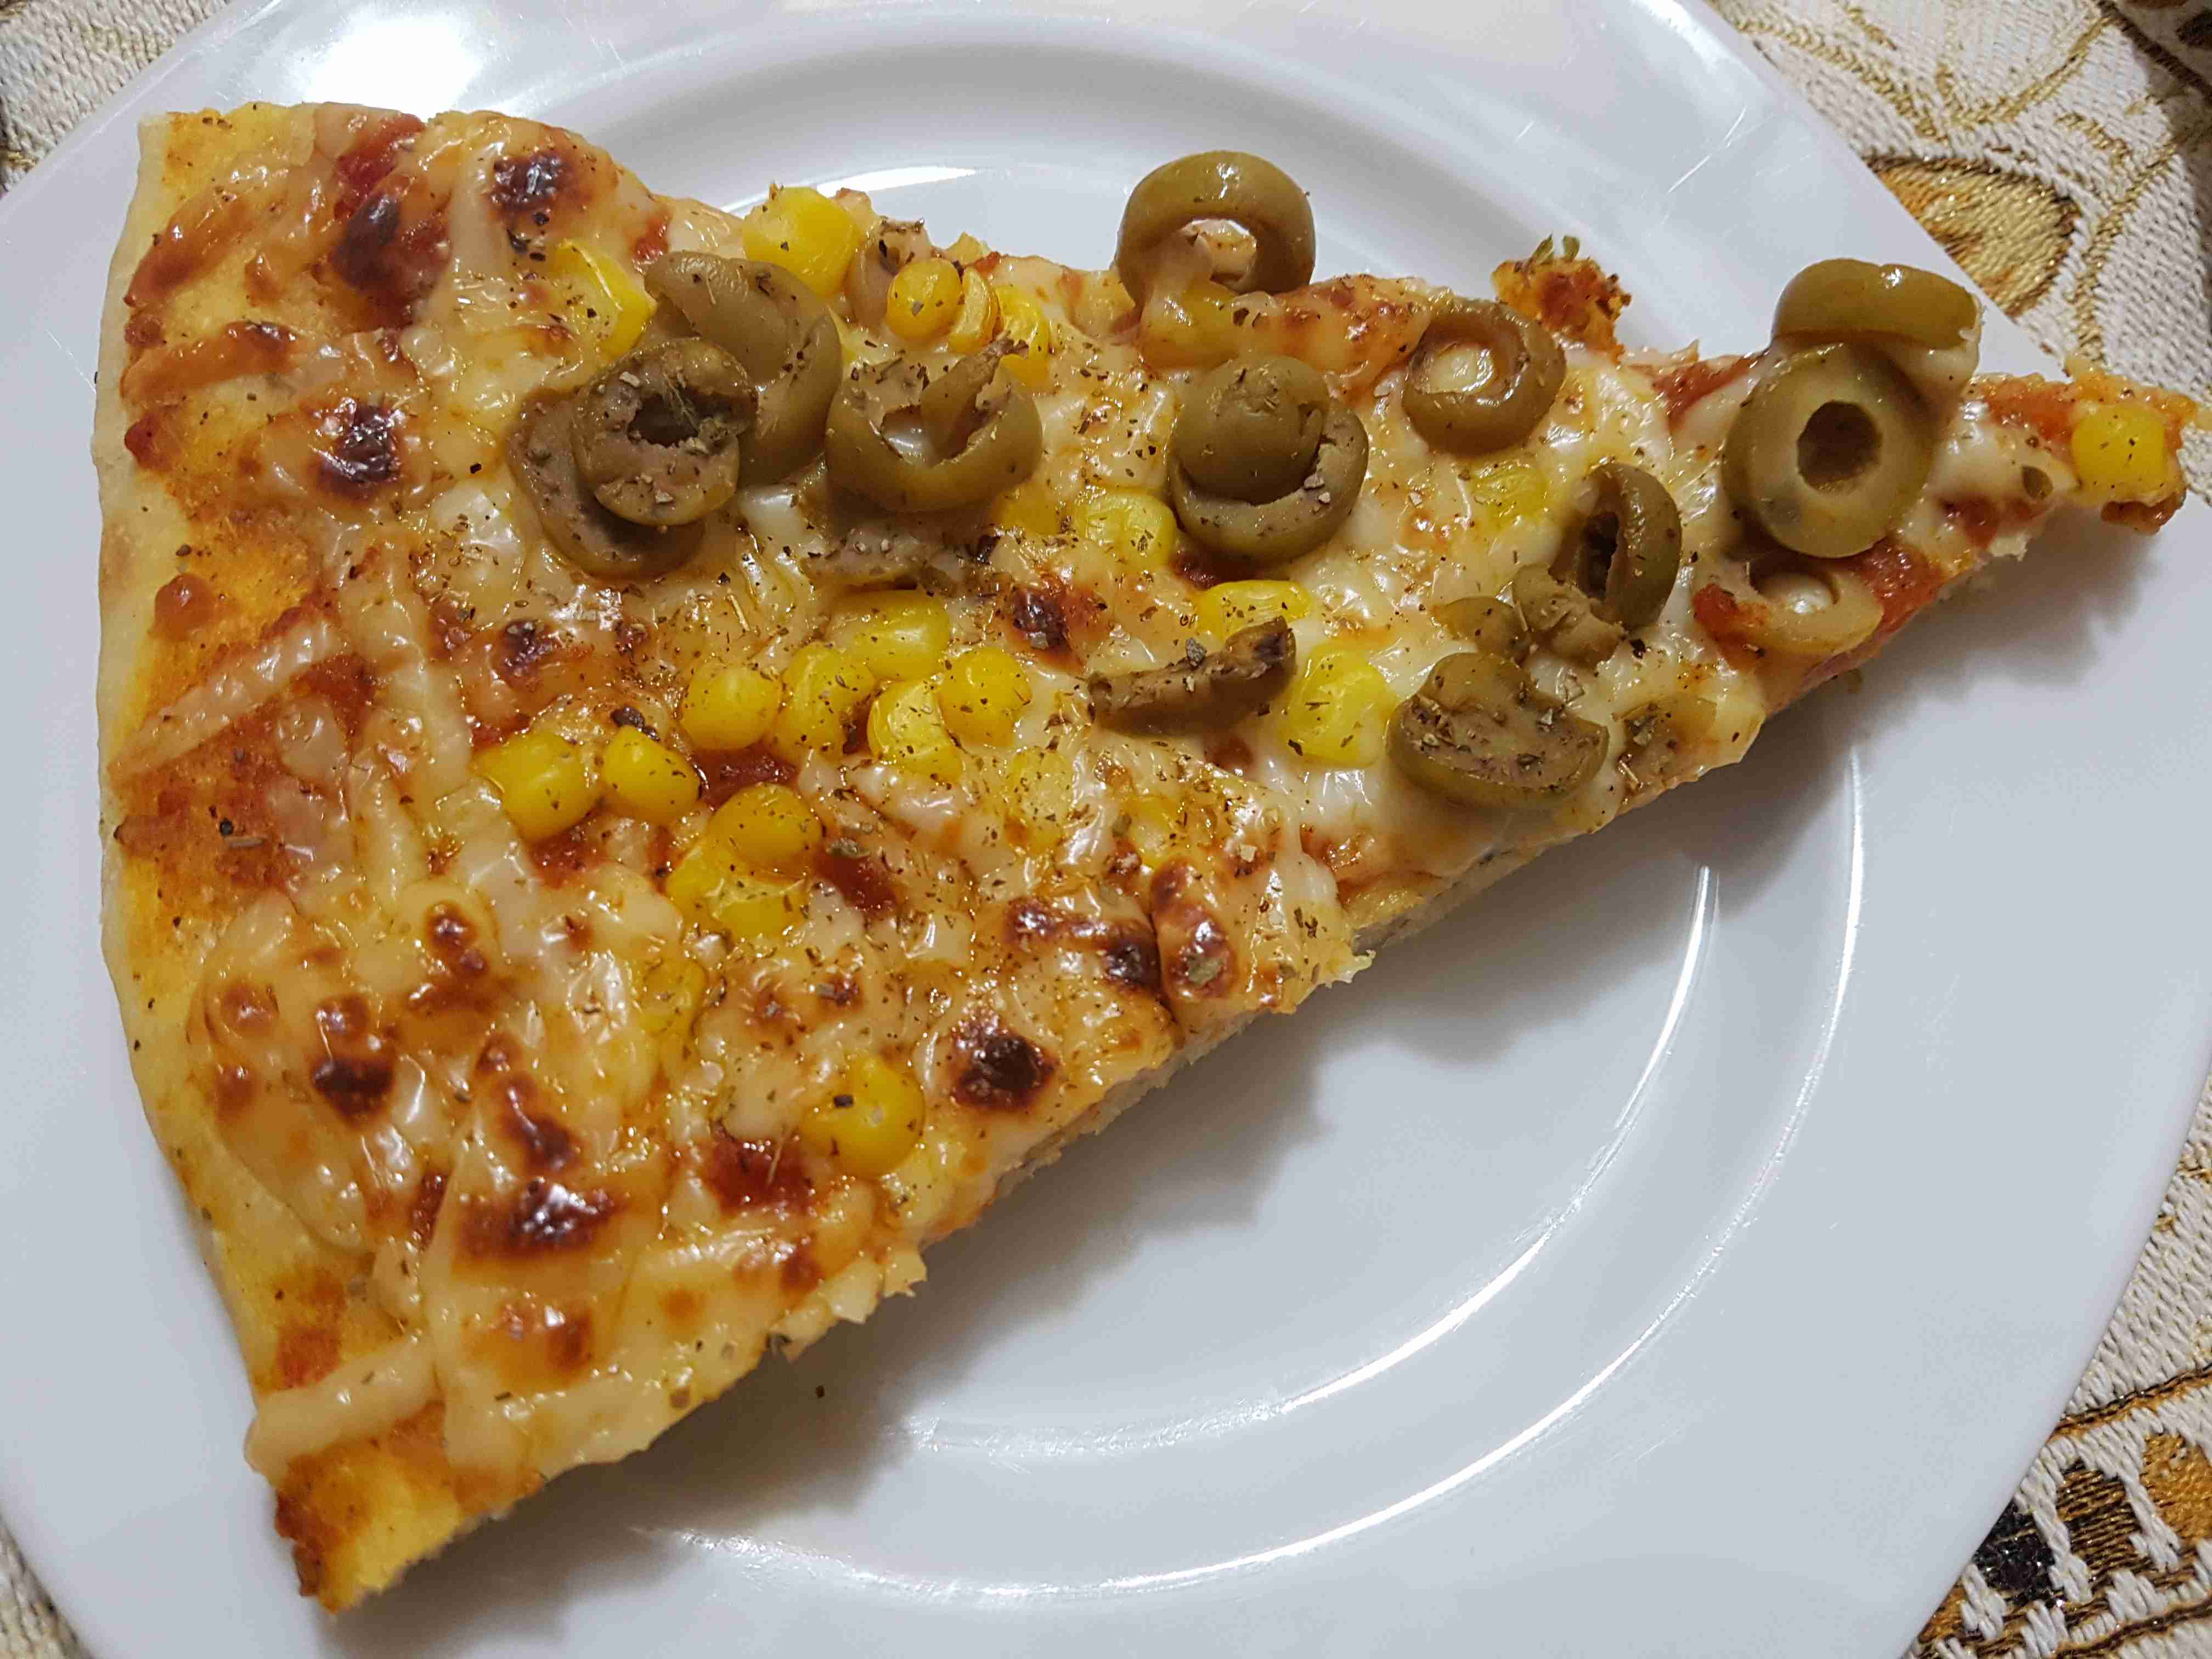 البيتزا الشهية من تحت ديات حماتي ملكة مسابقة اكلات رمضان